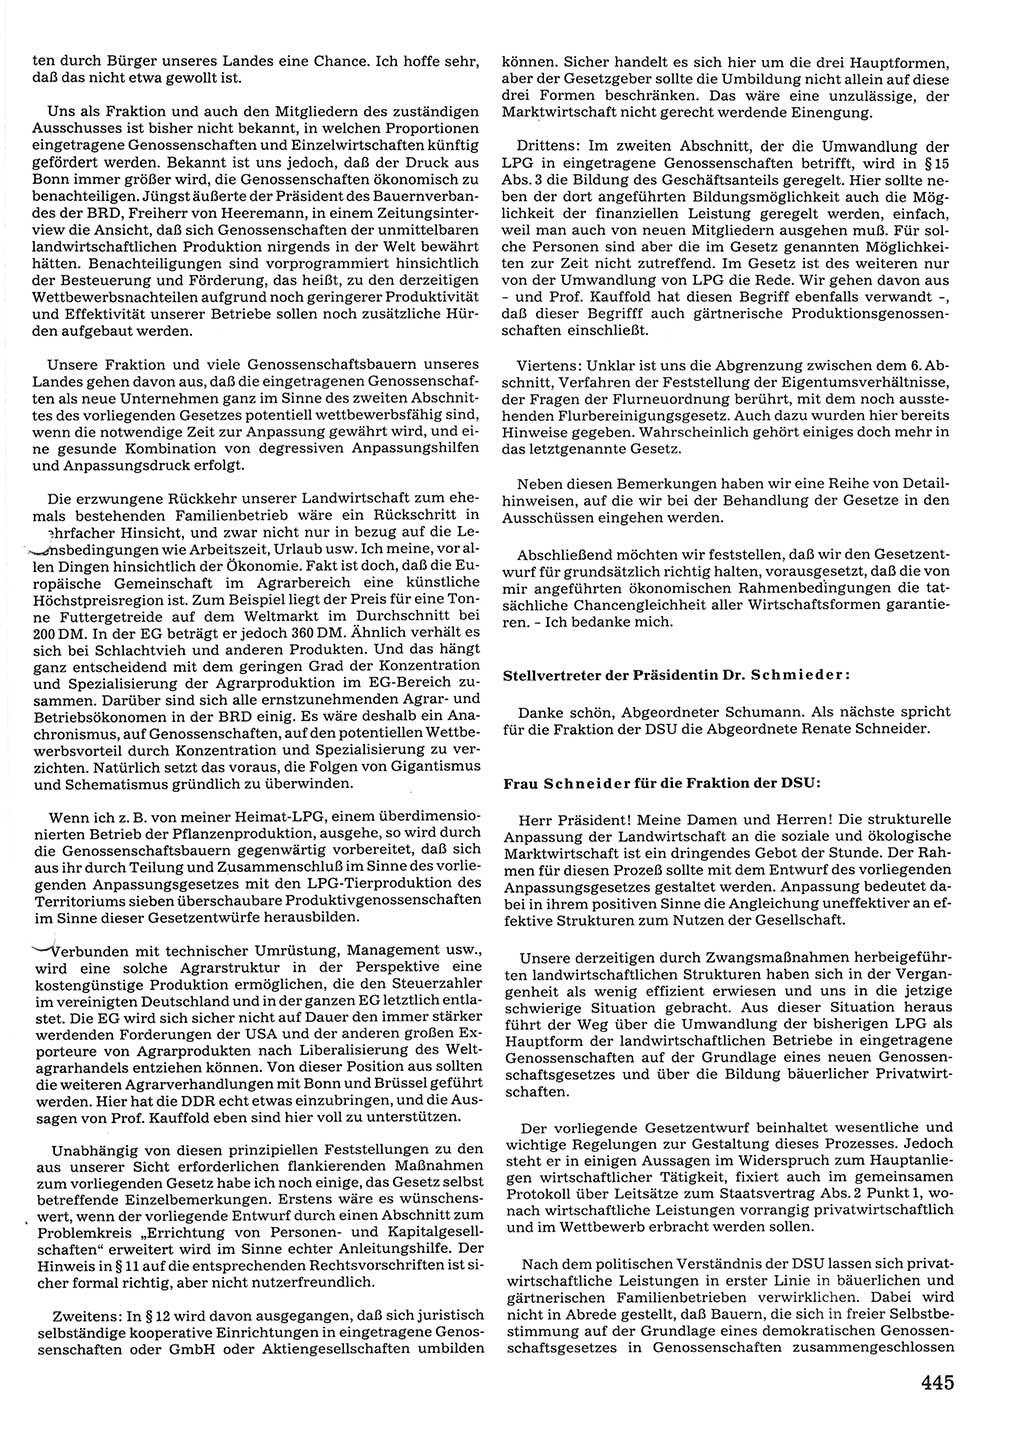 Tagungen der Volkskammer (VK) der Deutschen Demokratischen Republik (DDR), 10. Wahlperiode 1990, Seite 445 (VK. DDR 10. WP. 1990, Prot. Tg. 1-38, 5.4.-2.10.1990, S. 445)